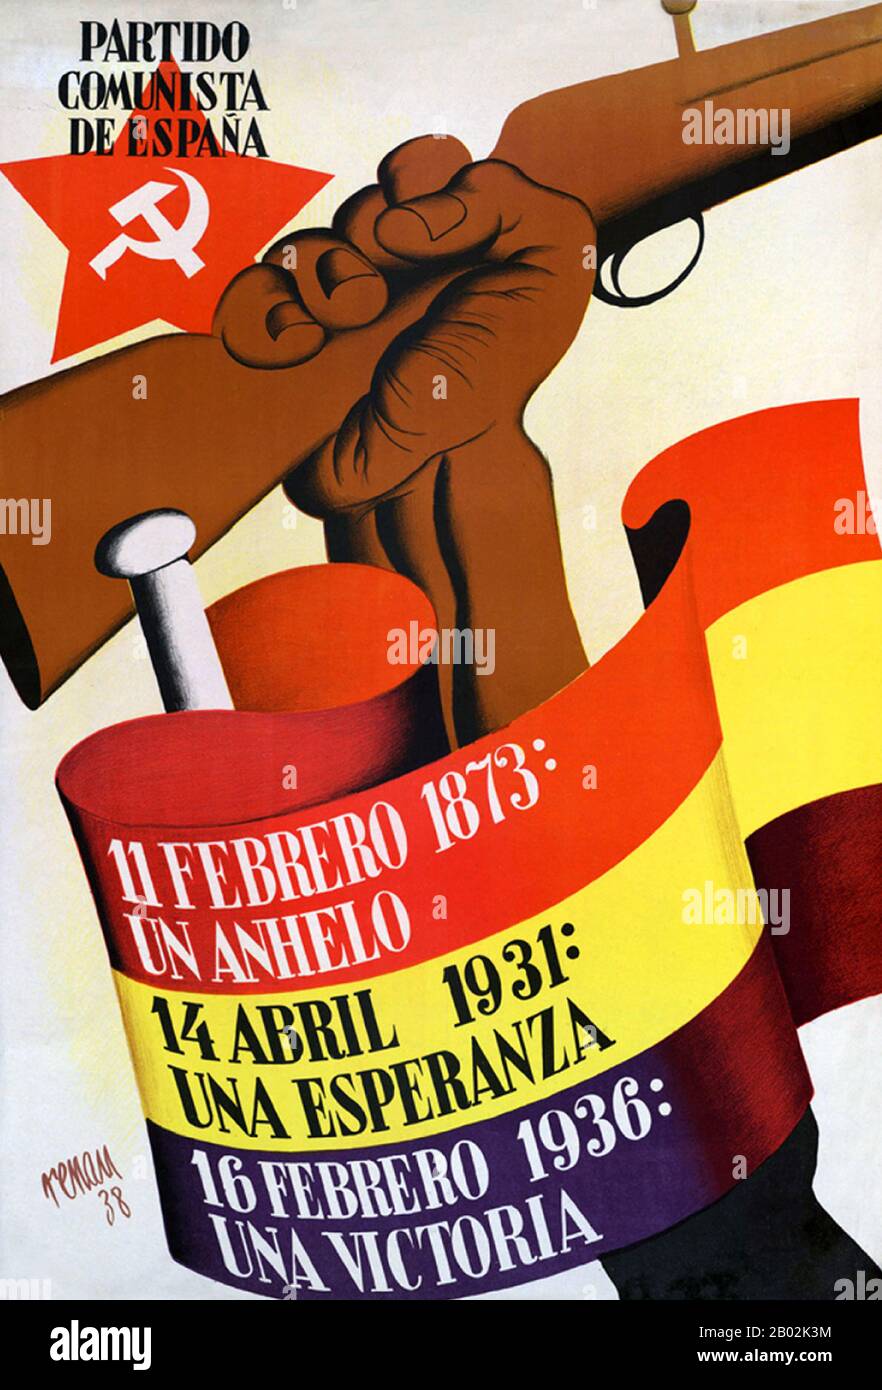 La guerre civile espagnole a été combattue du 17 juillet 1936 au 1er avril 1939 entre les Républicains, loyaux à la République espagnole démocratiquement élue, et les nationalistes, un groupe rebelle dirigé par le général Francisco Franco. Les nationalistes l'ont emporté, et Franco a dirigé l'Espagne pour les 36 prochaines années, de 1939 à sa mort en 1975. Les nationalistes ont avancé de leurs bastions dans le sud et l'ouest, capturant la majeure partie de la côte nord de l'Espagne en 1937. Ils ont également assiégé Madrid et la région au sud et à l'ouest pour une grande partie de la guerre. Capturer de grandes parties de la Catalogne en 1938 et 1939, le W Banque D'Images